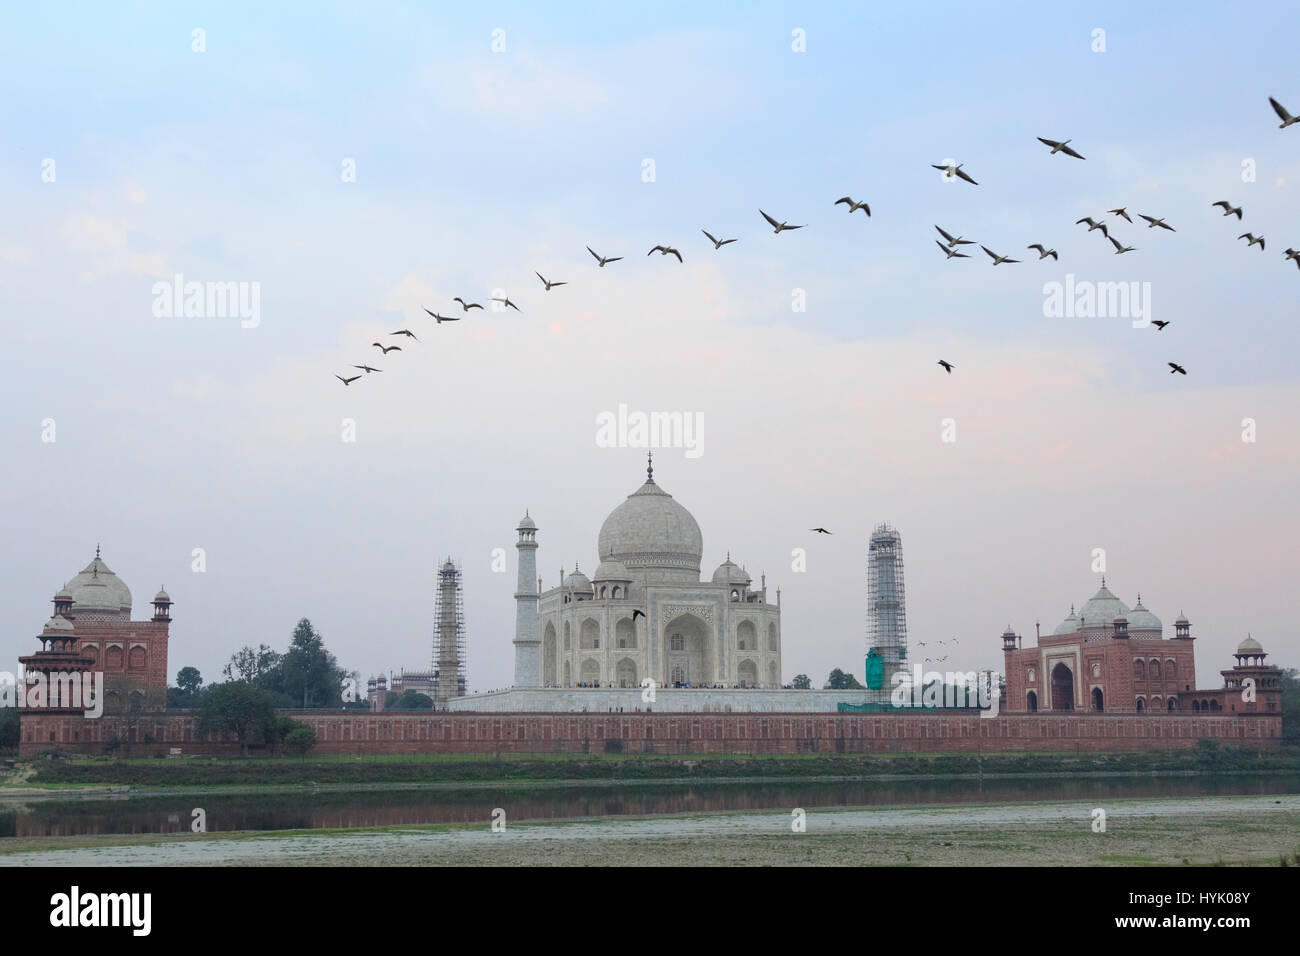 Taj Mahal von nördlich des Yamuna Flusses aus gesehen, Park Mehtab Bagh, Agra, Uttar Pradesh, Indien Stock Photo